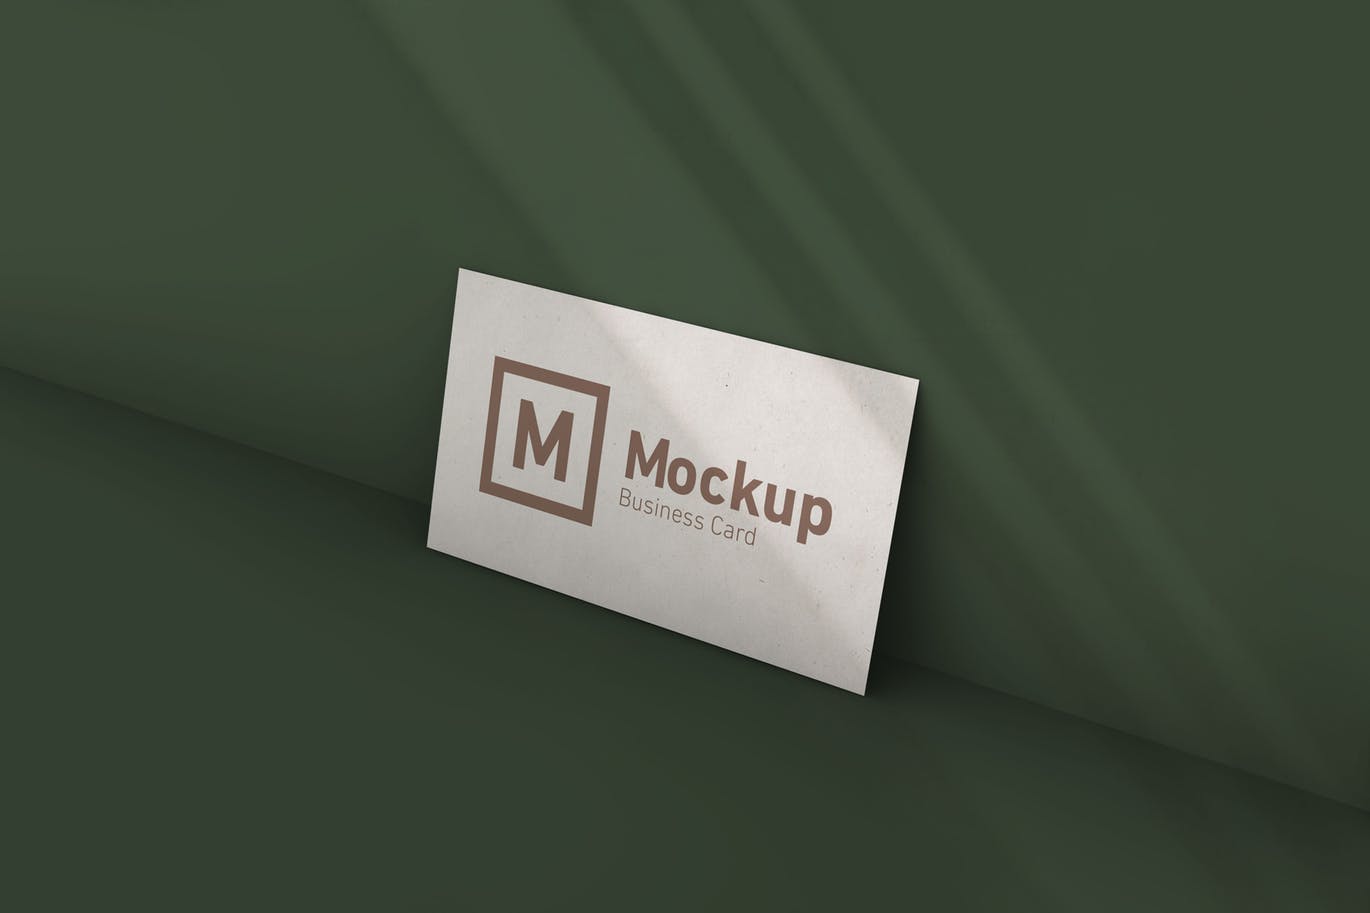 企业名片设计阴影效果样机模板 Business Card Mockup With Shadow插图